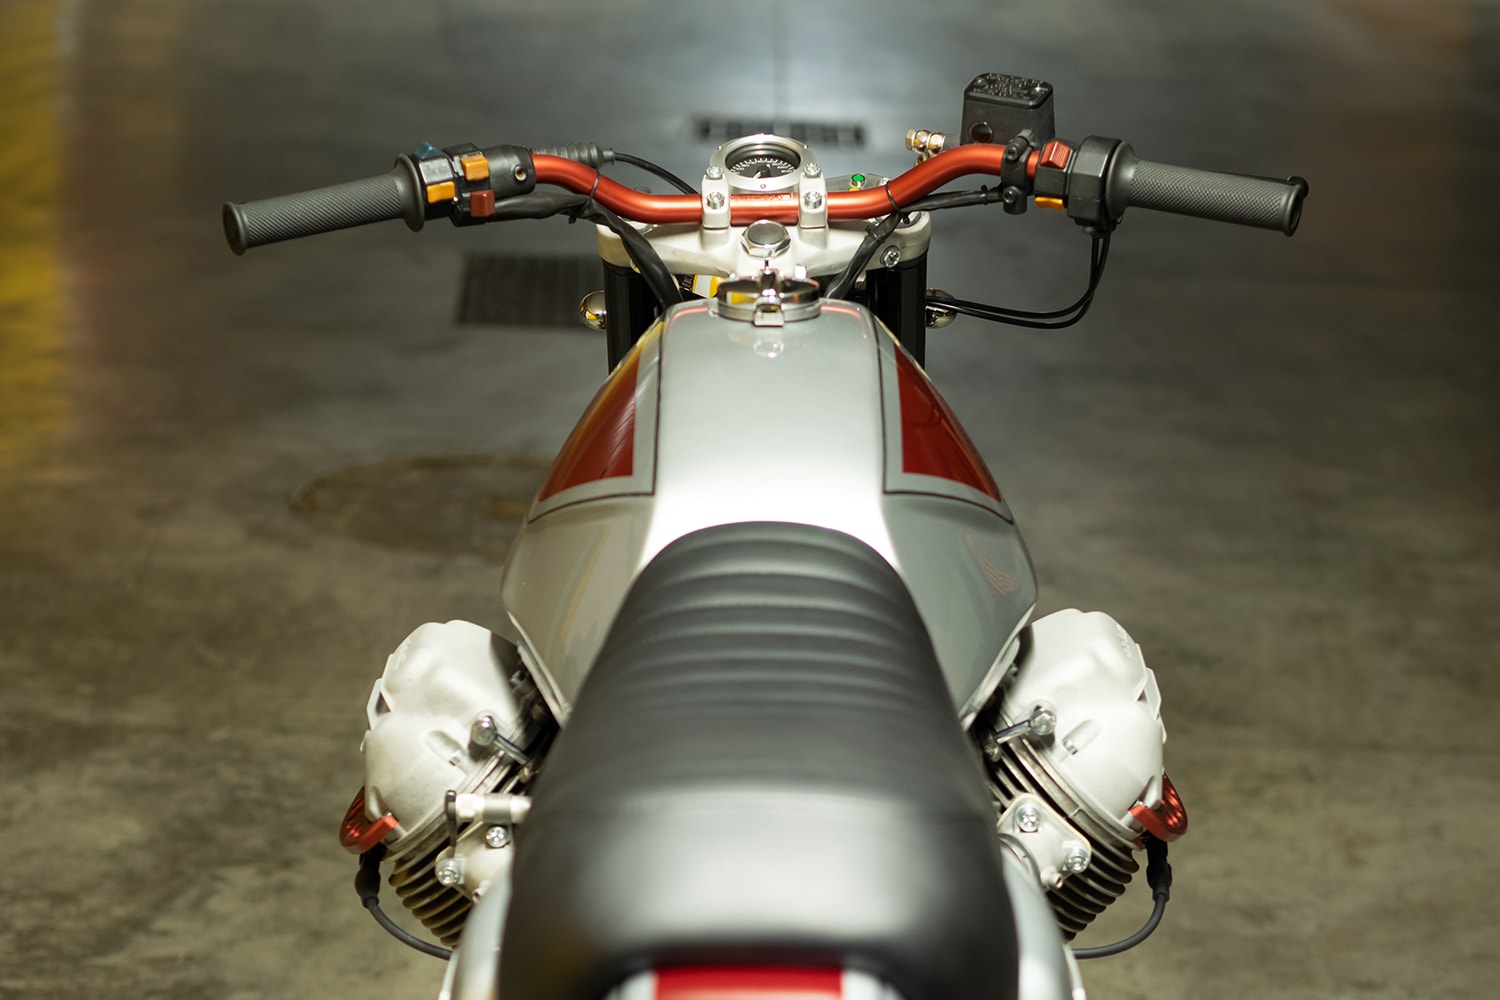 Кастомный Moto Guzzi SP1000 — огромное визуальное отличие от своего стандартного воплощения